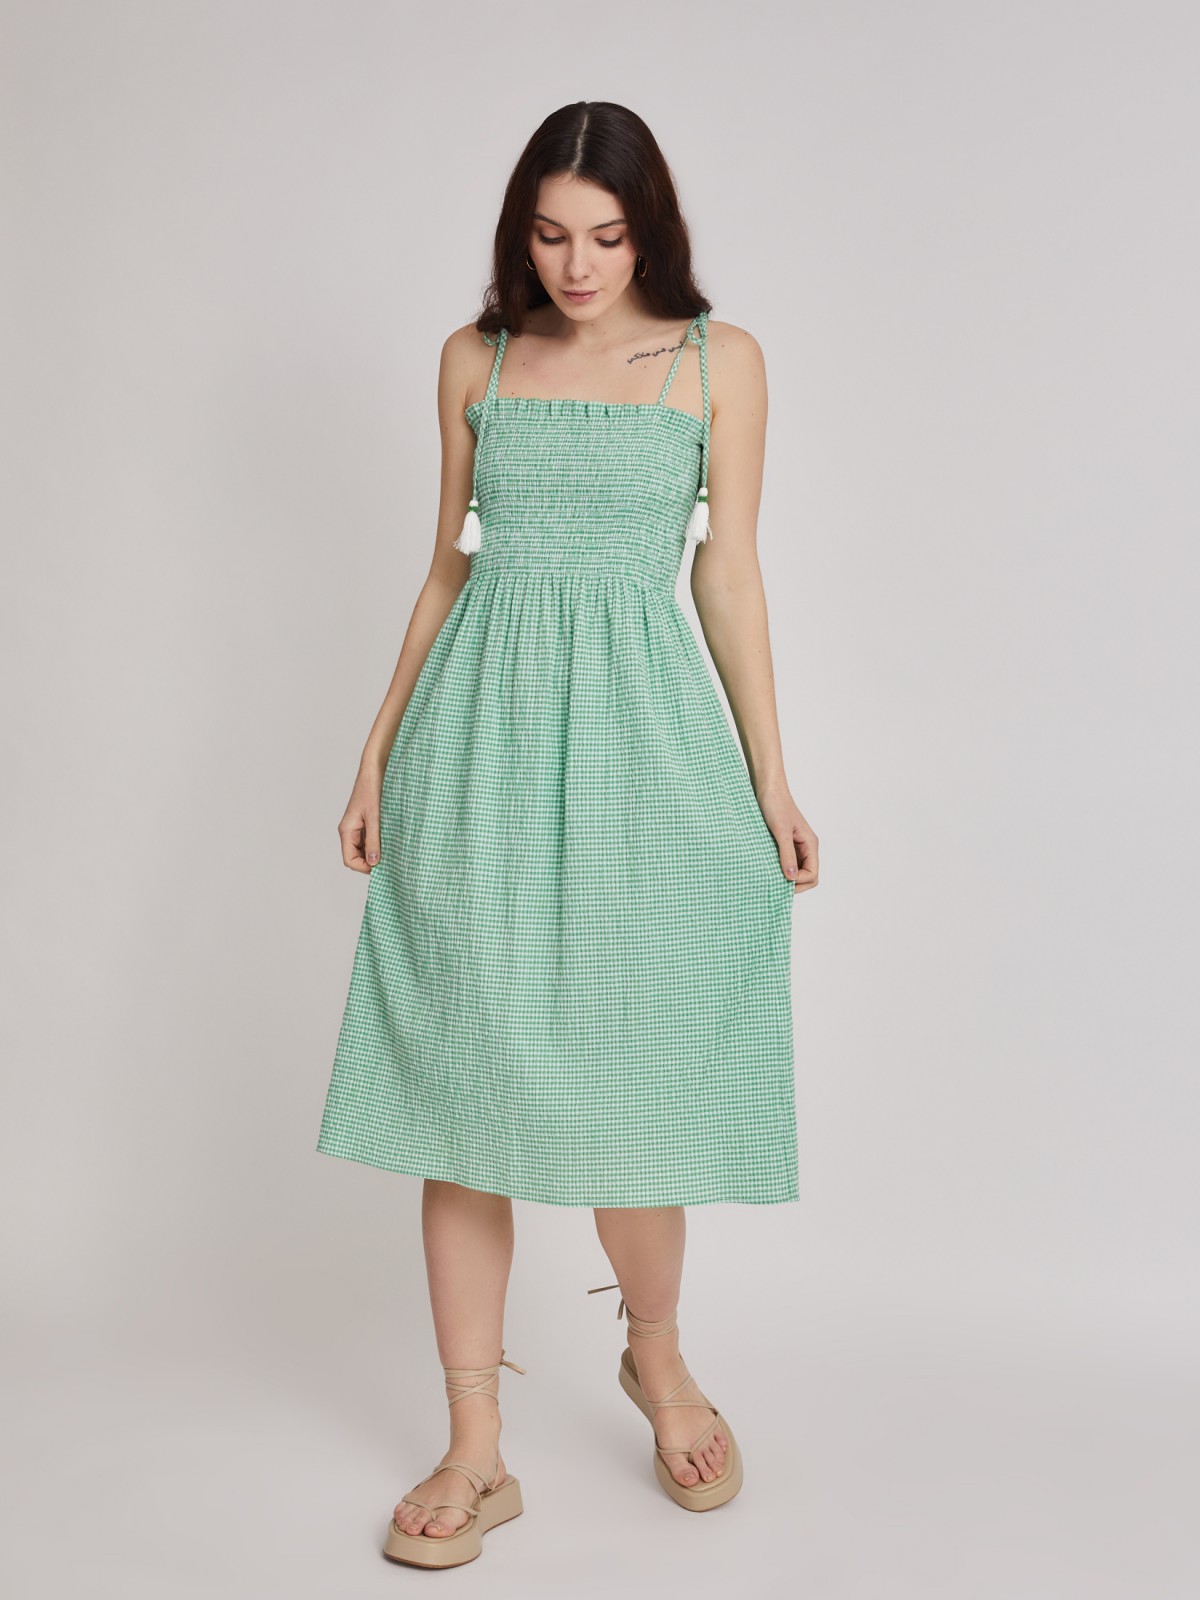 Платье zolla 223248259183, цвет светло-зеленый, размер XS - фото 2